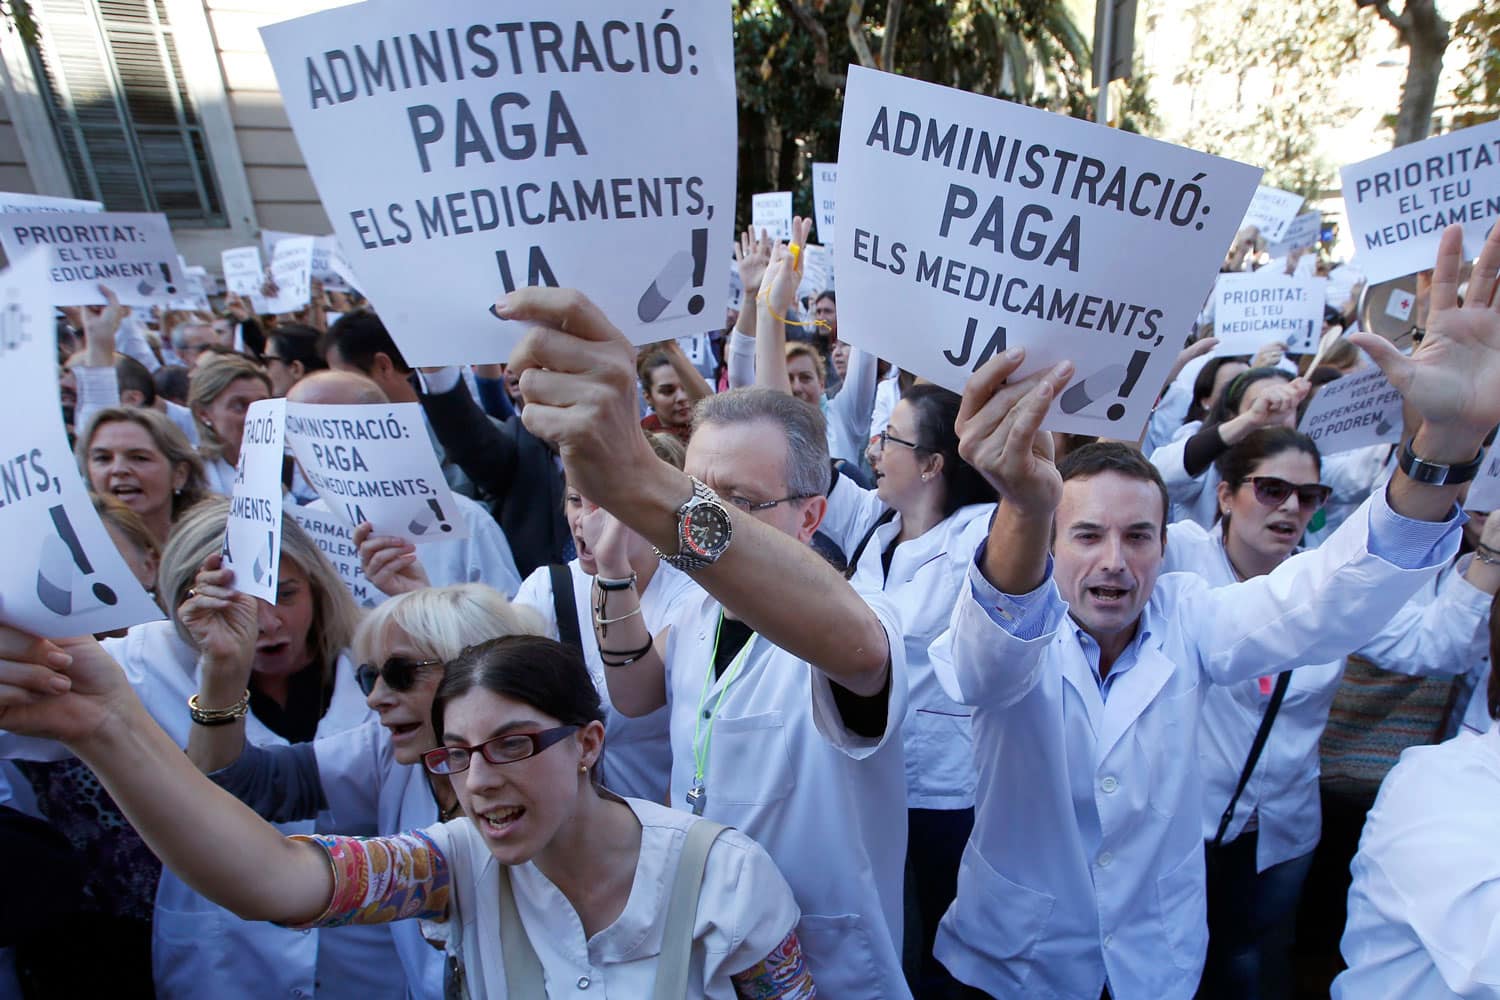 Huelga de farmacéuticos en Cataluña para exigir a la Administración el pago de las recetas adeudadas